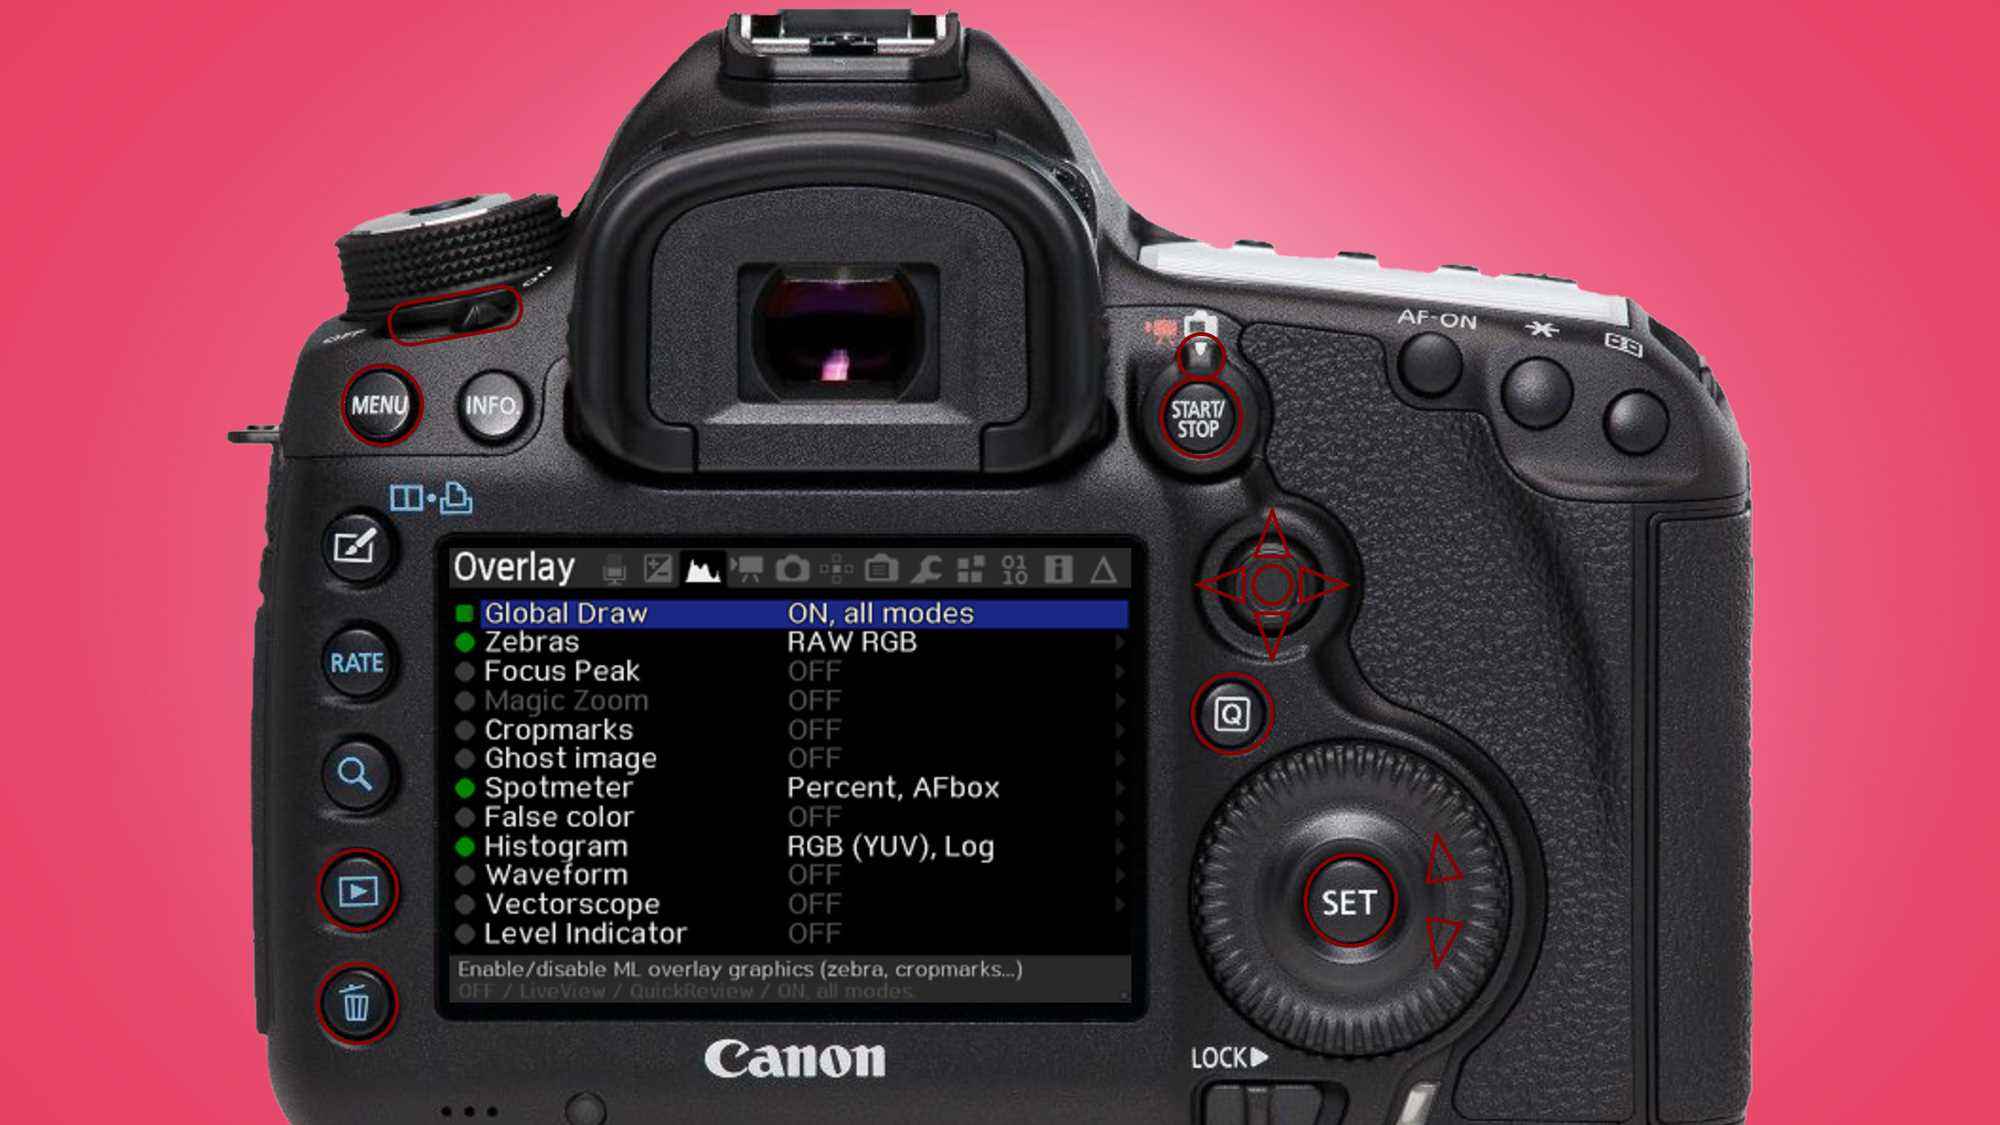 Magic Lantern yazılımını çalıştıran bir Canon kamera